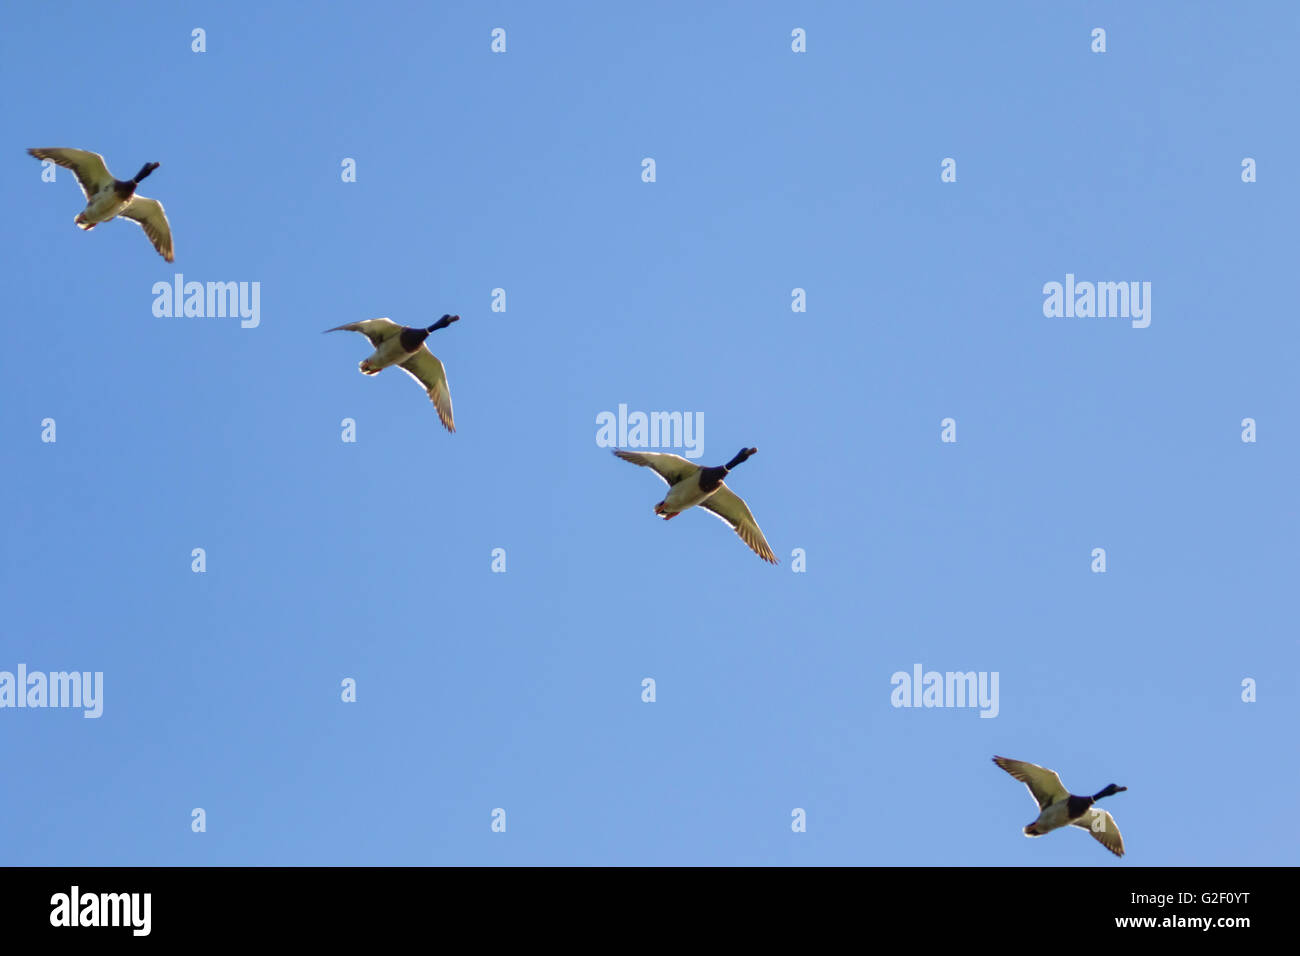 Patos (Anas platyrhynchos) volando en formación. Foto de stock